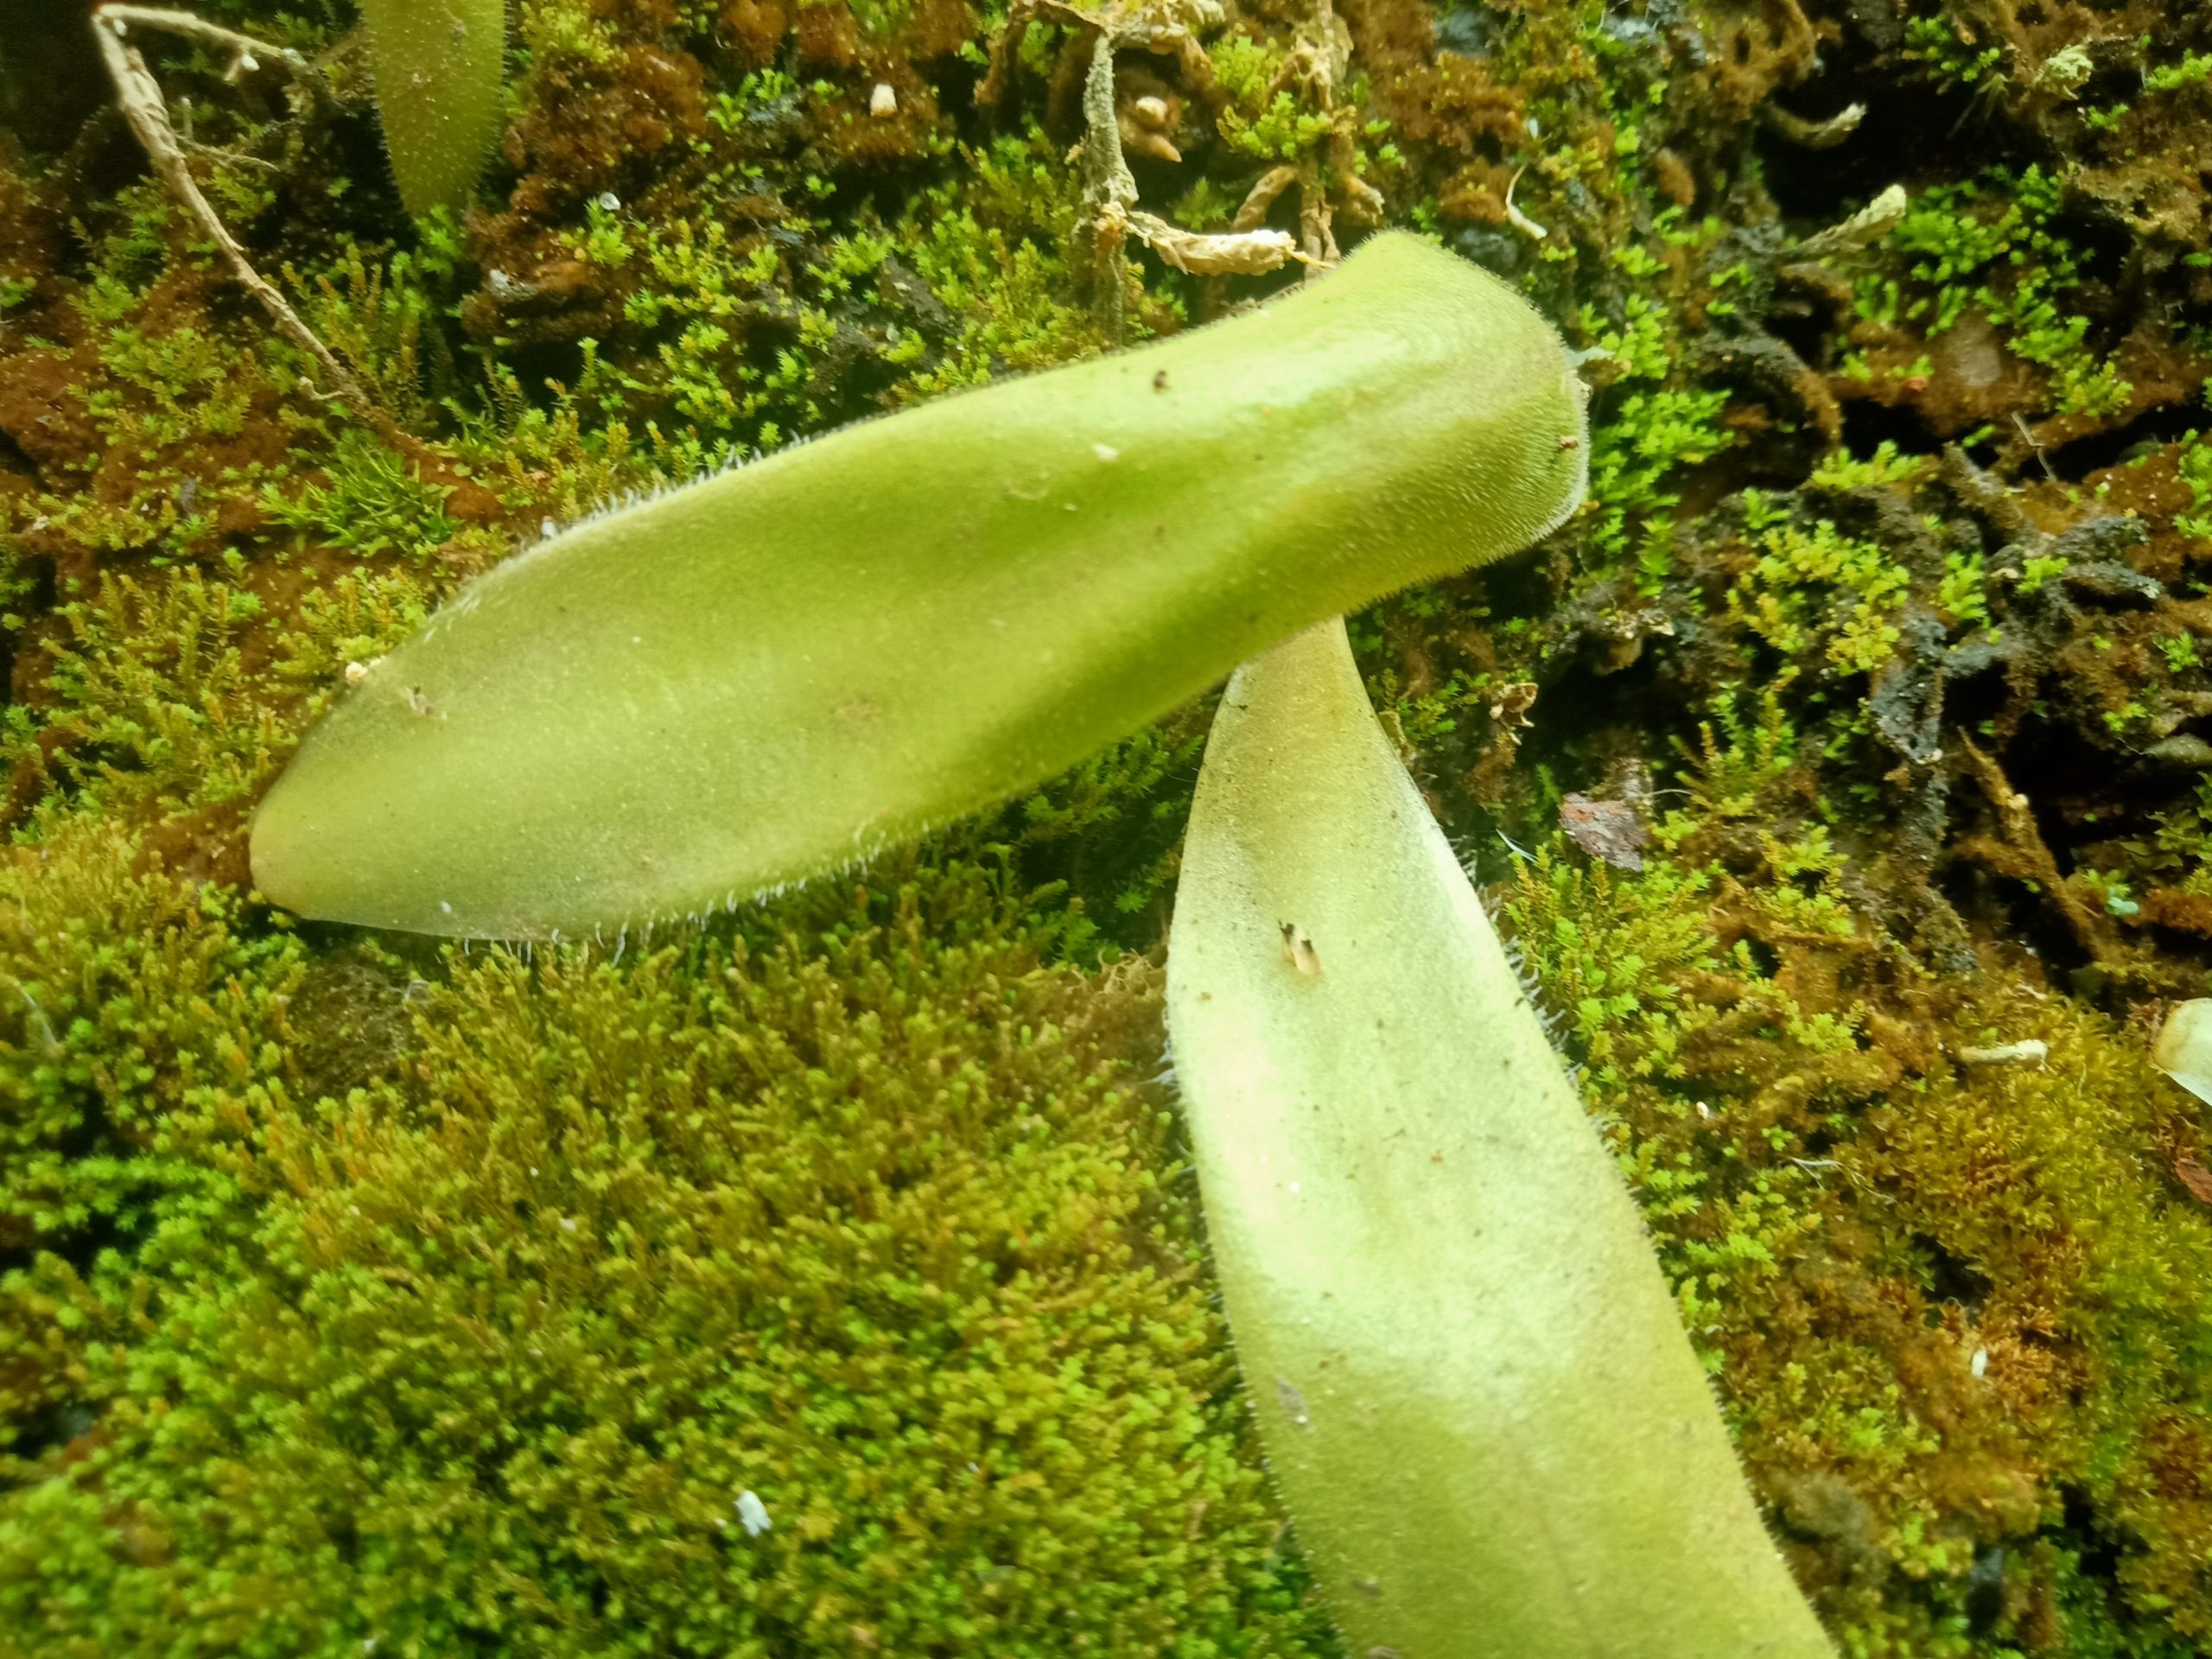 Pinguicula agnicola leaf pullings